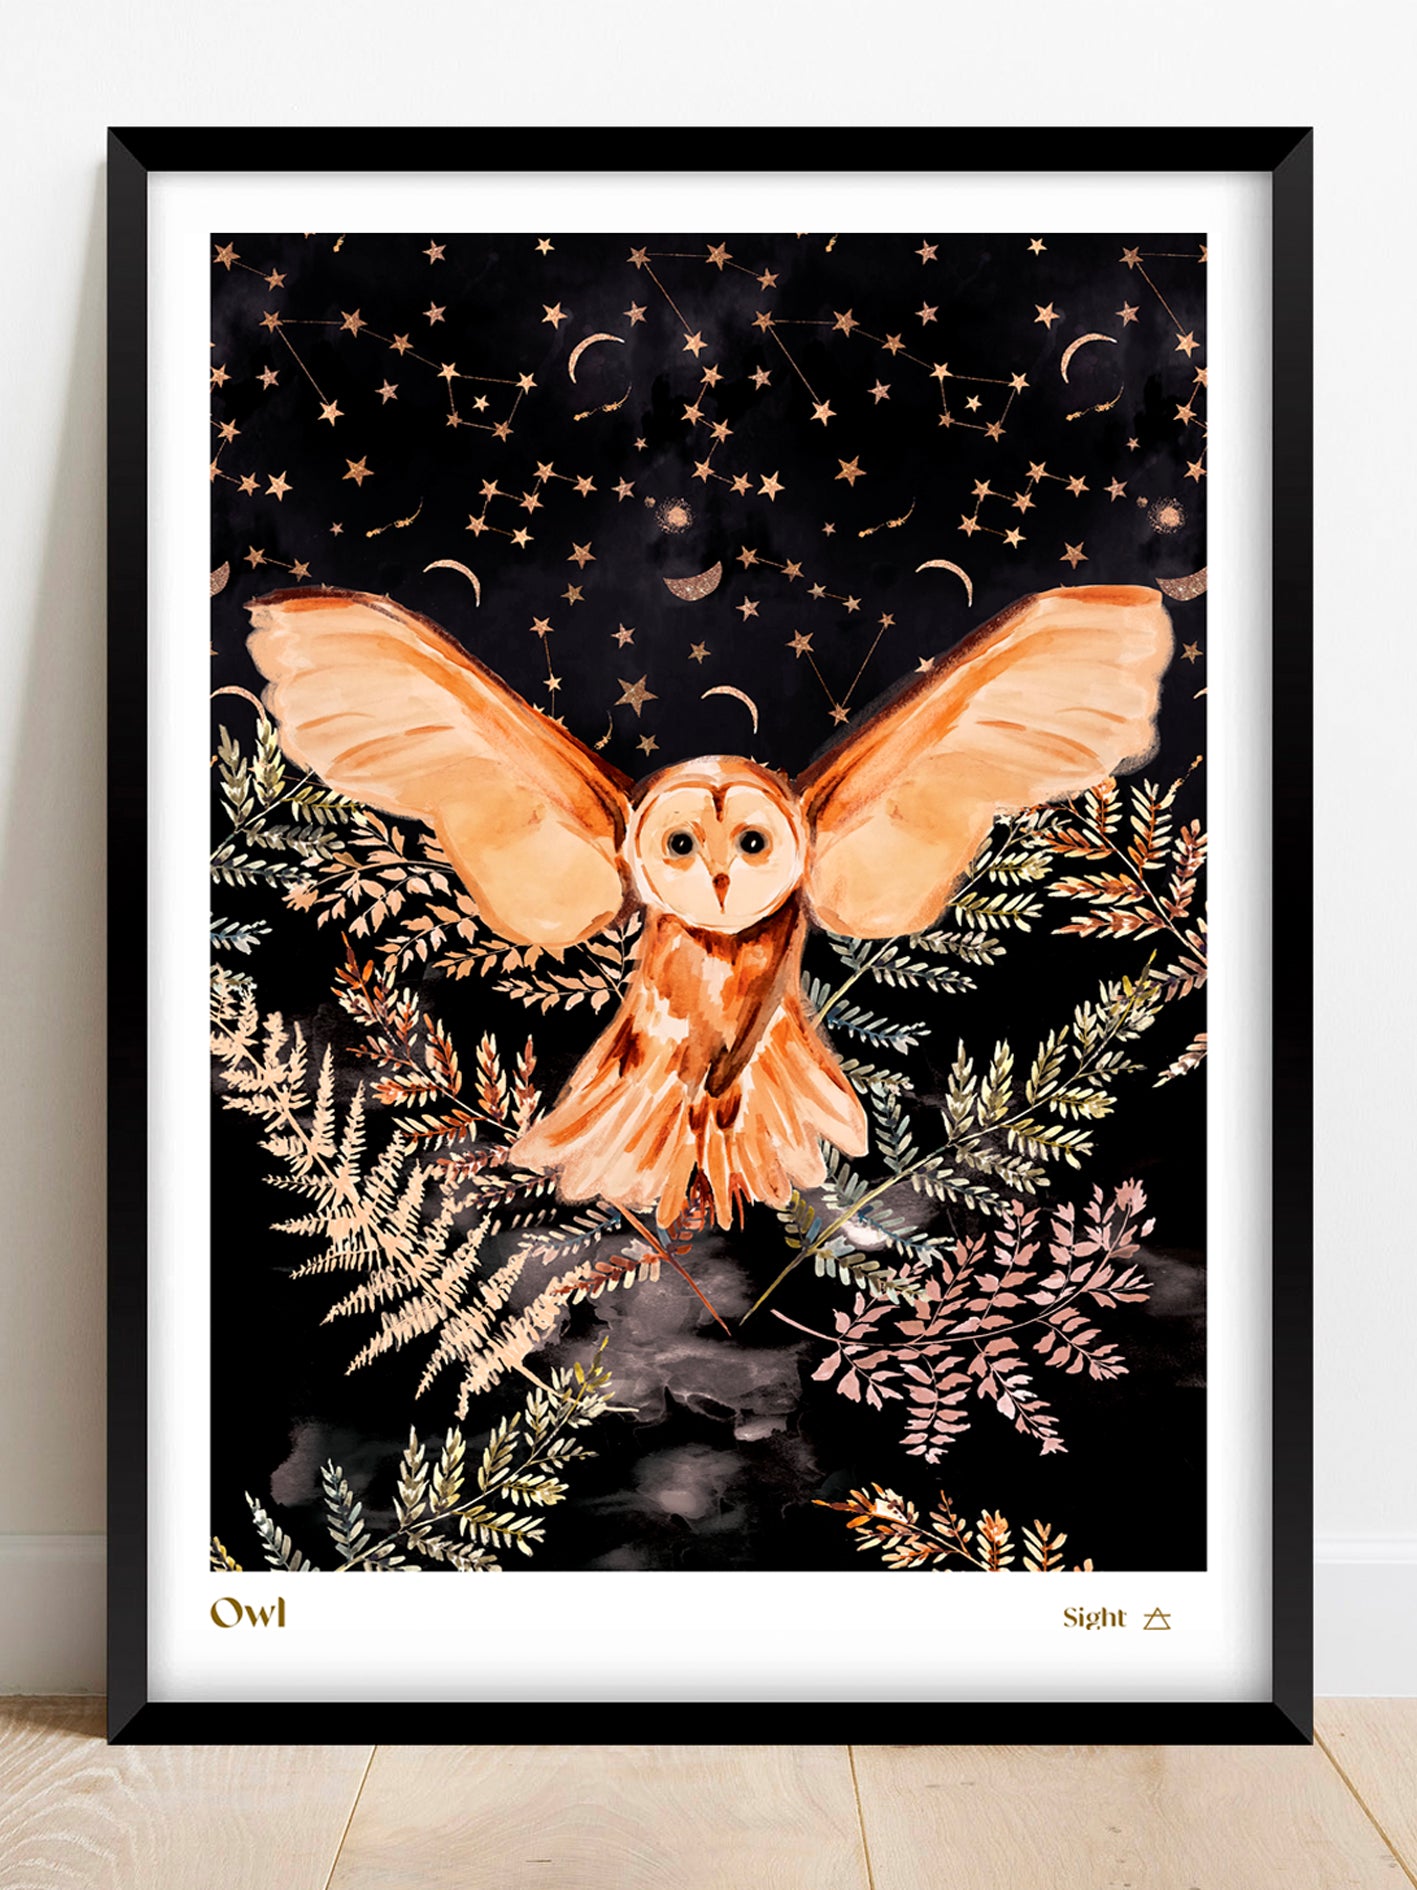 Framed A3 night owl art print seconds